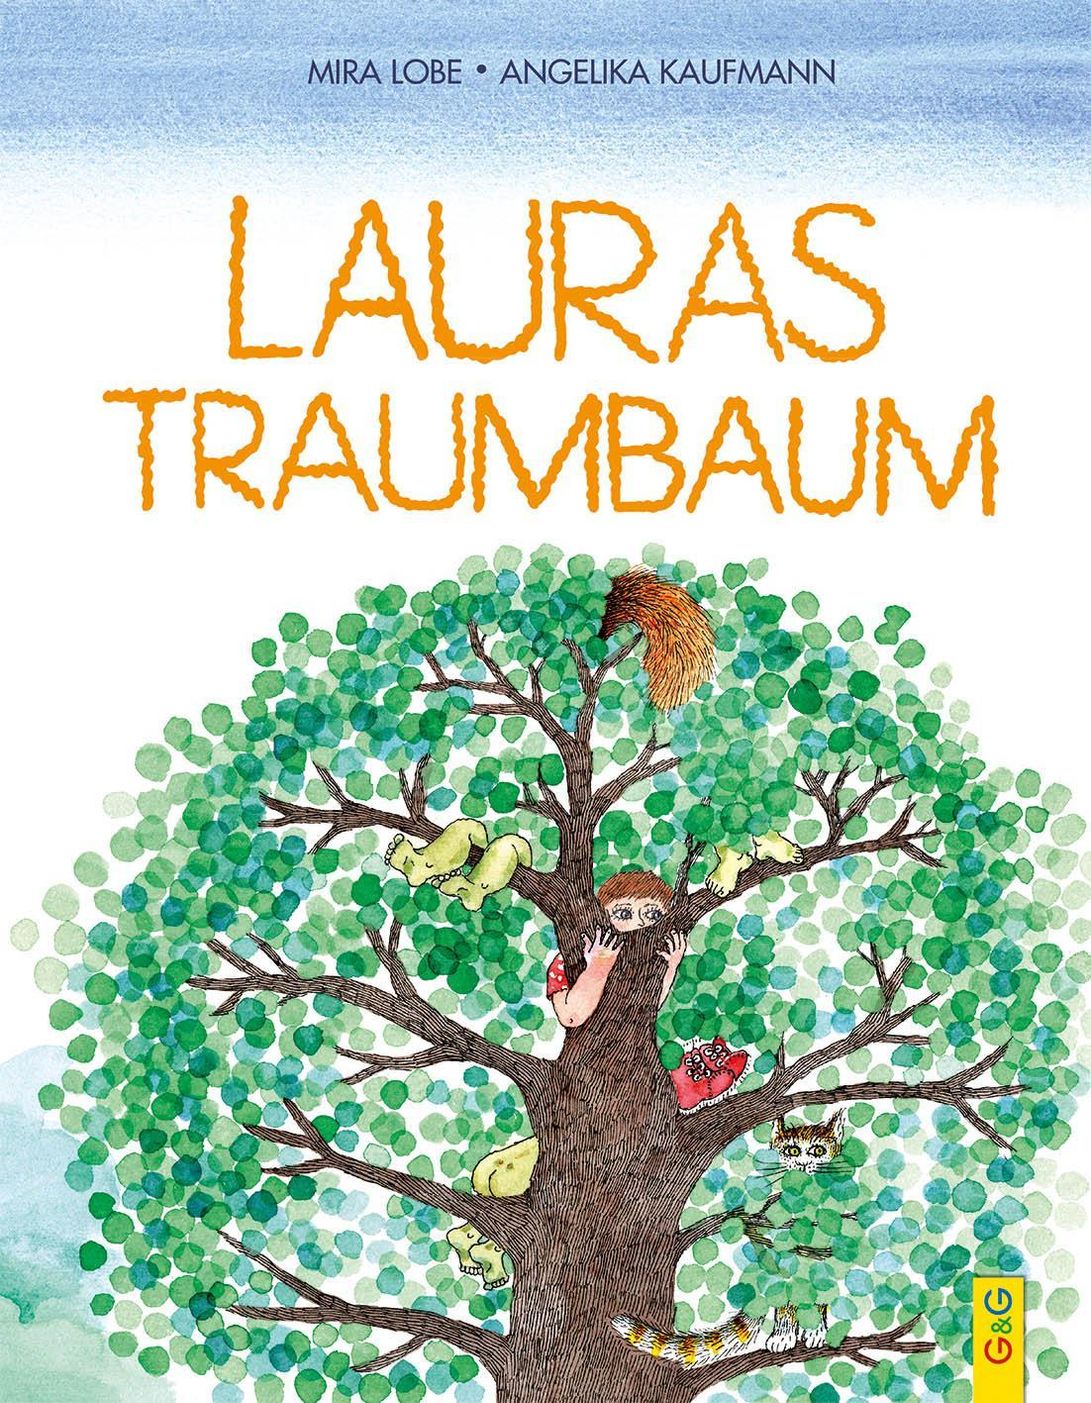 Lauras Traumbaum Buch von Mira Lobe versandkostenfrei bei Weltbild.at